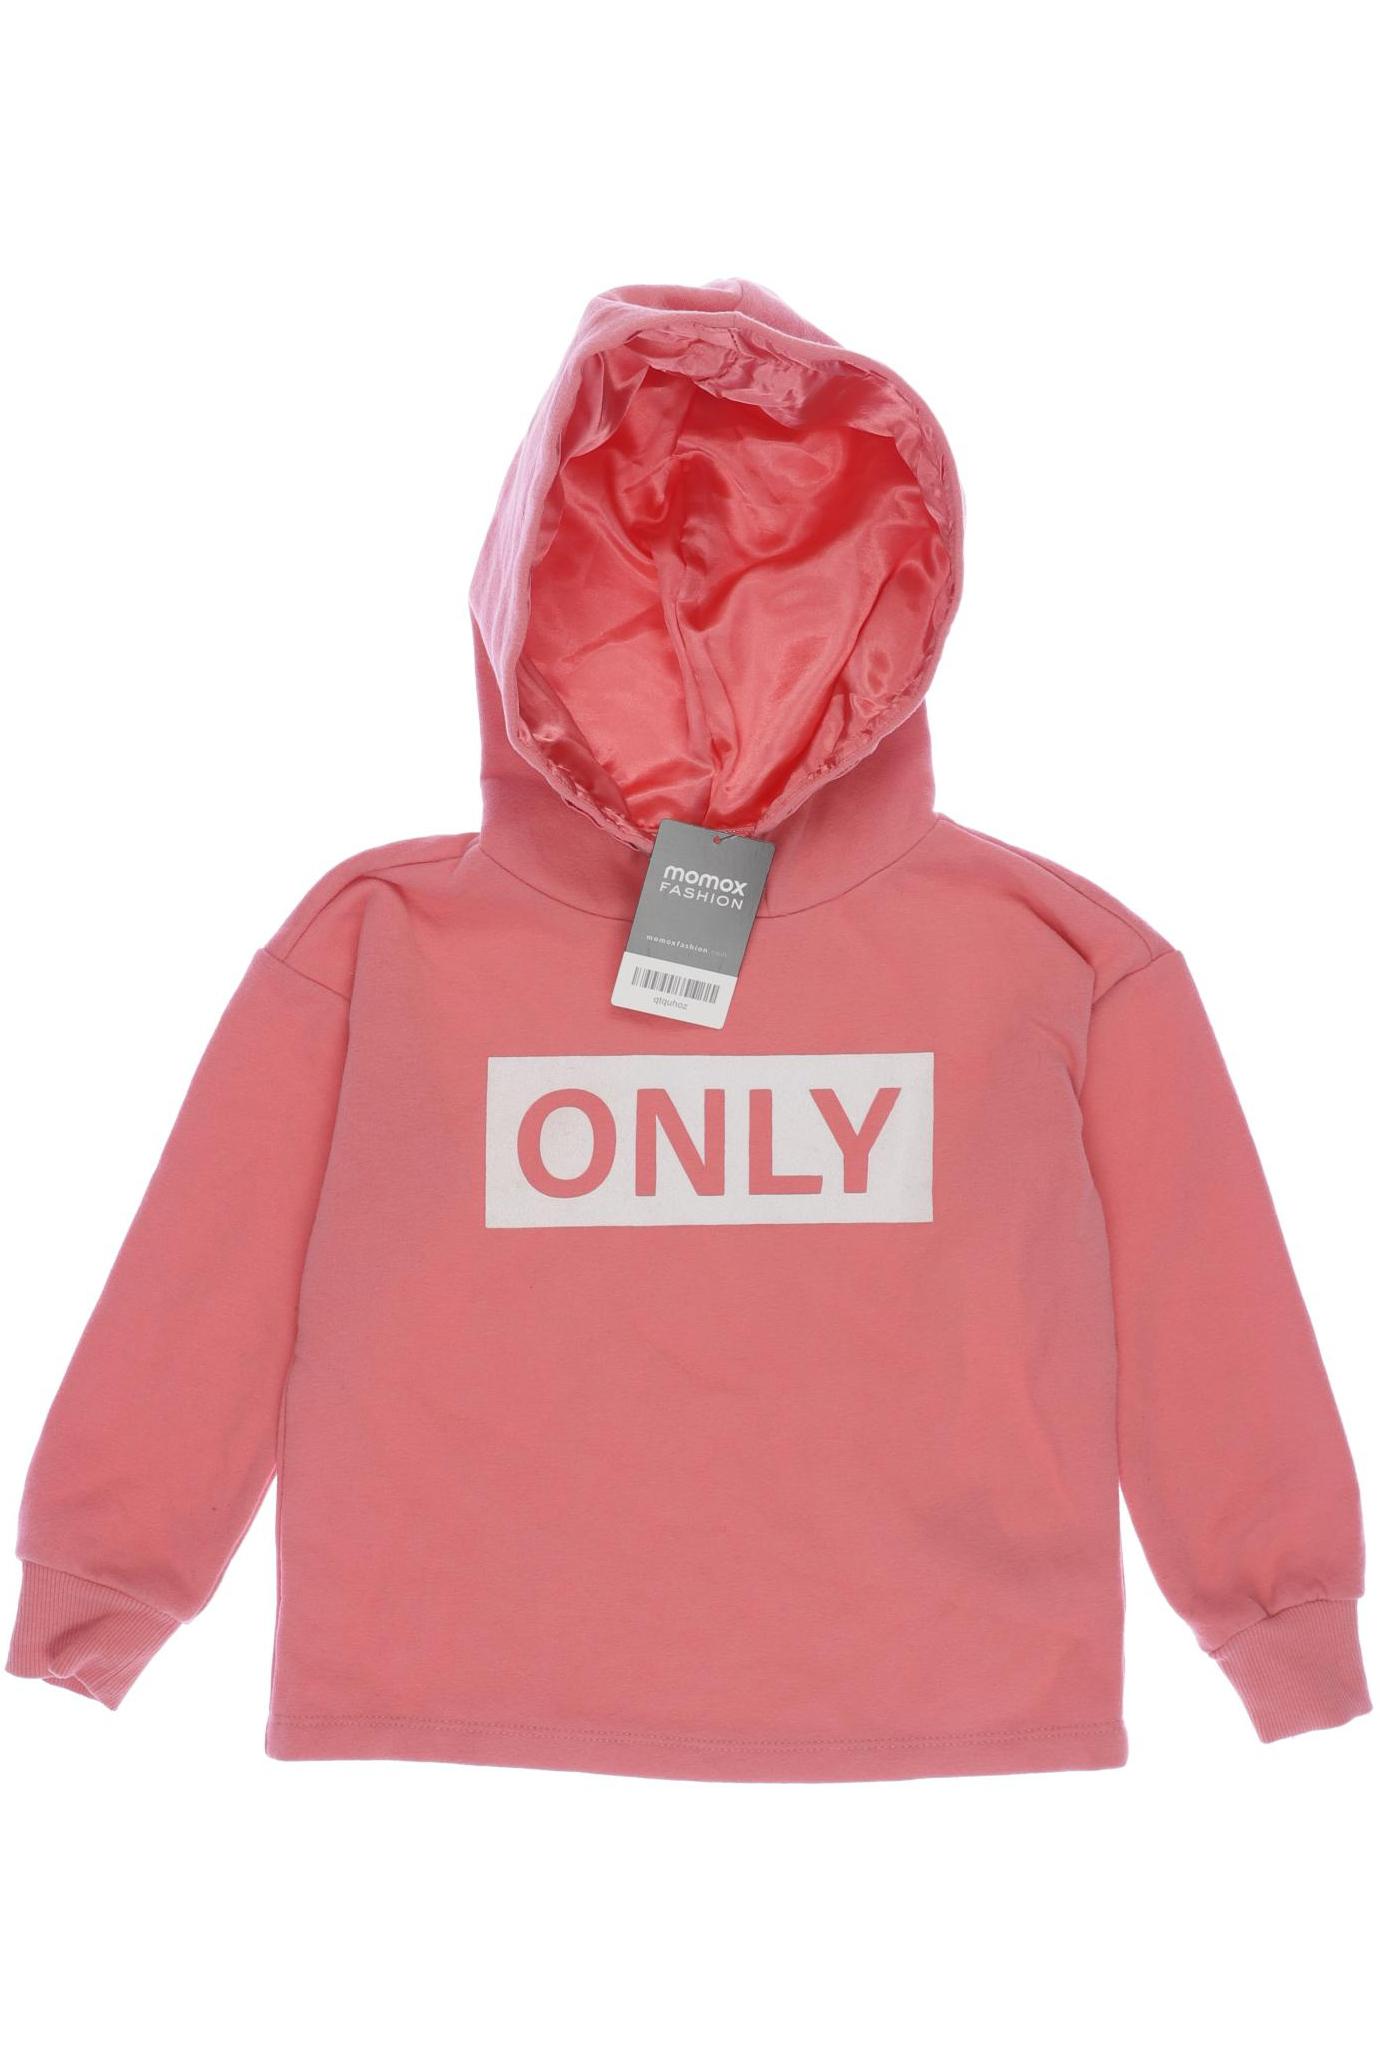 Only Damen Hoodies & Sweater, pink, Gr. 110 von Only